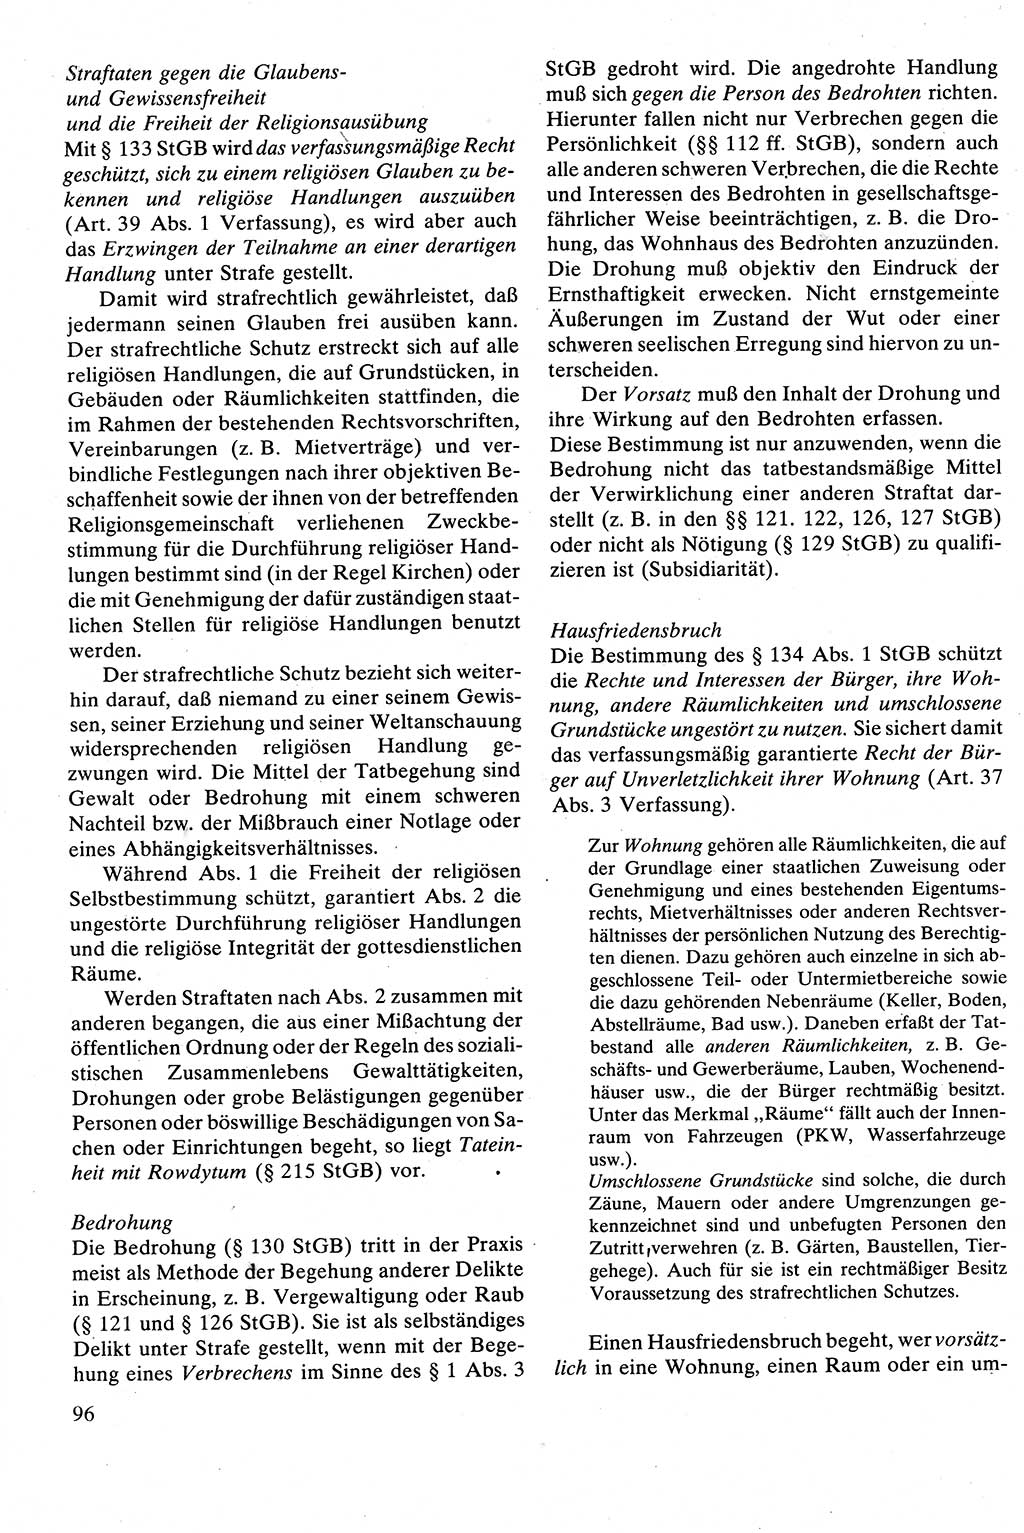 Strafrecht [Deutsche Demokratische Republik (DDR)], Besonderer Teil, Lehrbuch 1981, Seite 96 (Strafr. DDR BT Lb. 1981, S. 96)